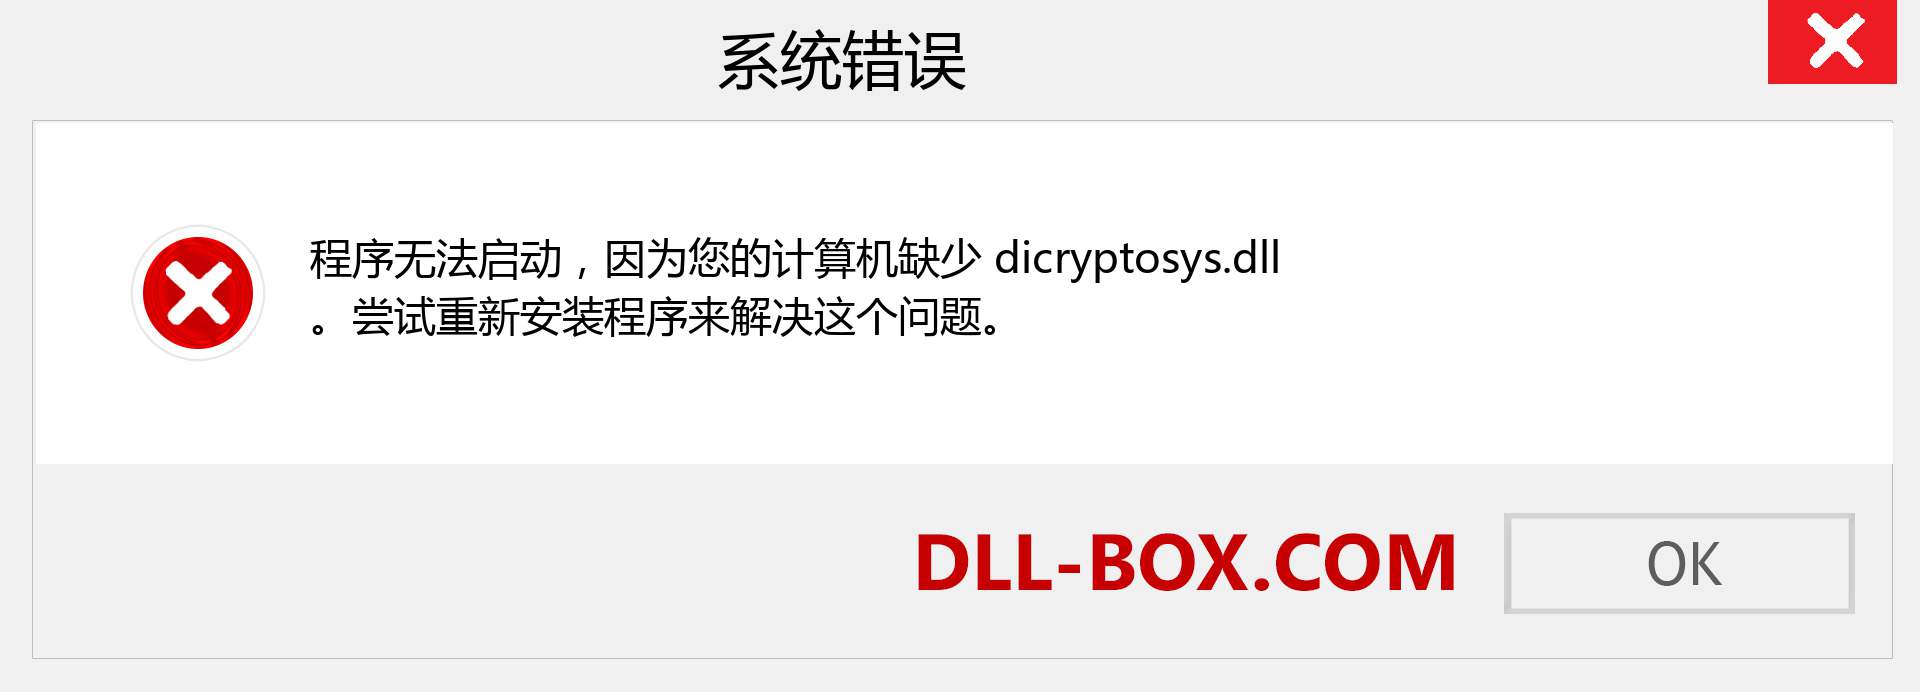 dicryptosys.dll 文件丢失？。 适用于 Windows 7、8、10 的下载 - 修复 Windows、照片、图像上的 dicryptosys dll 丢失错误